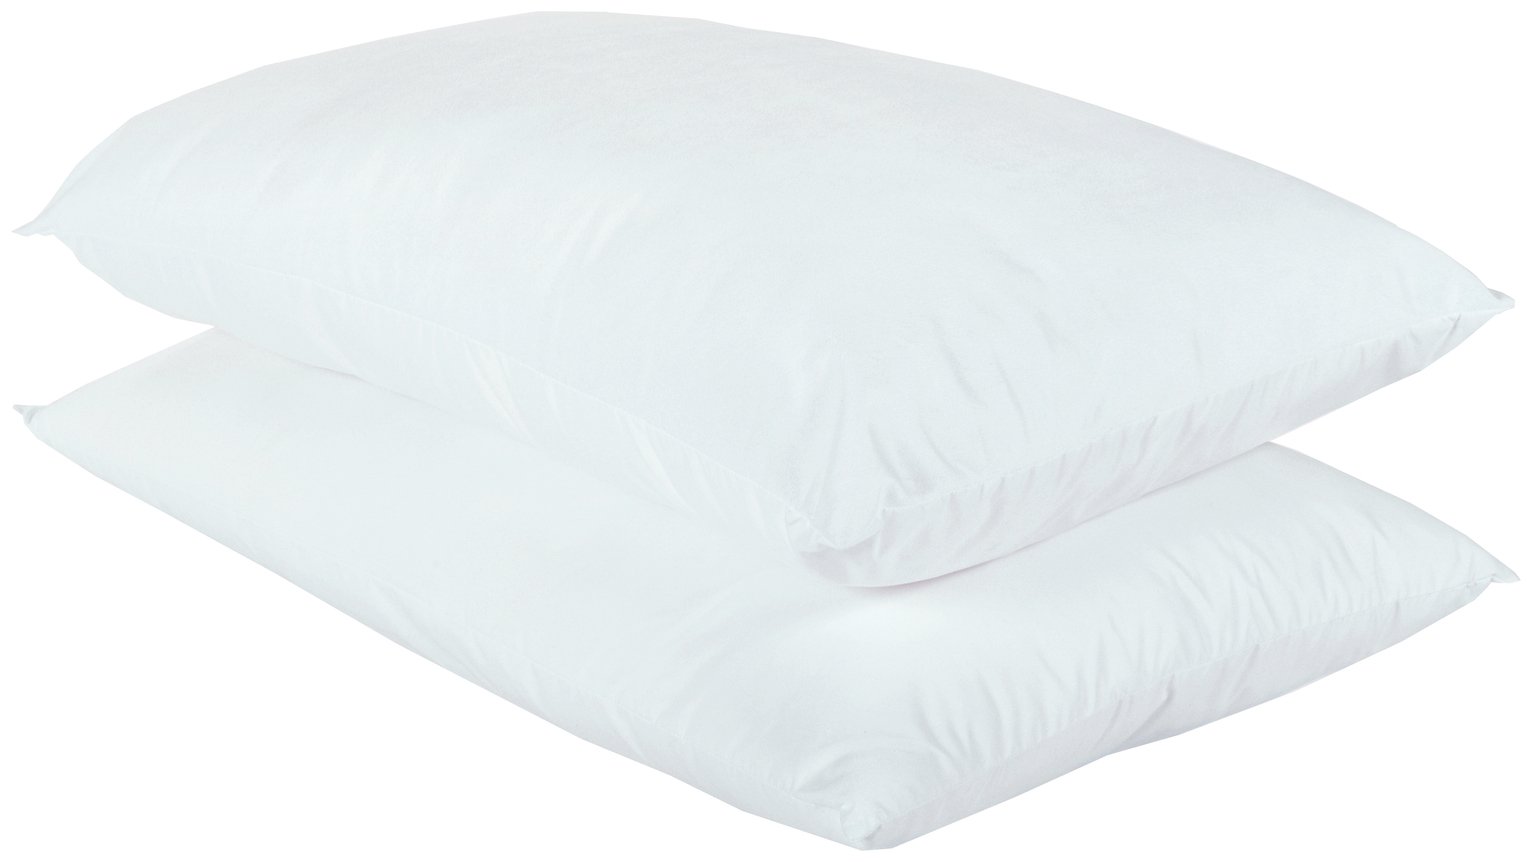 Argos Home Anti-Allergy Pair of Pillows